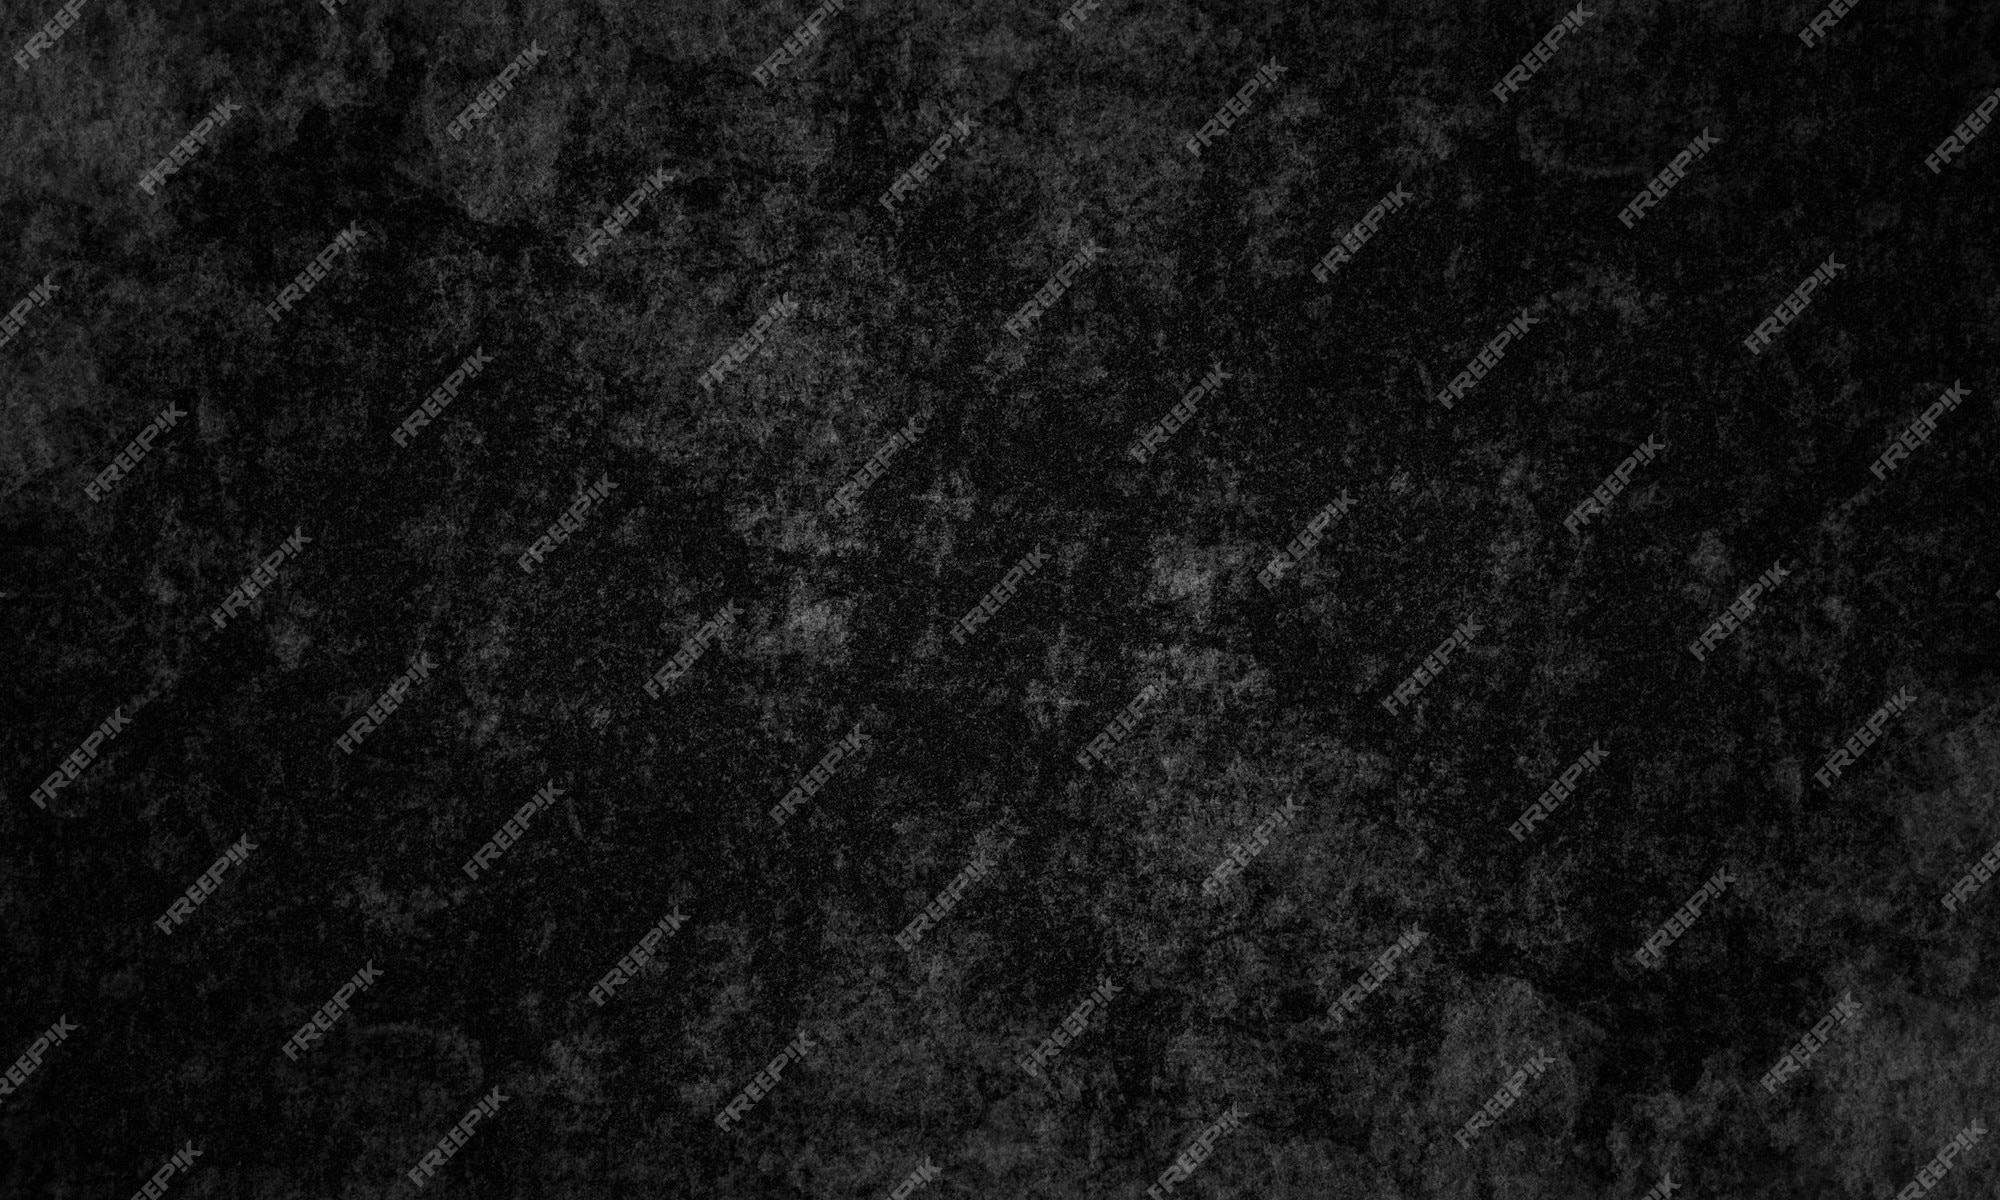 Nền đen Grunge hạt dẻ - Hình ảnh hạt dẻ cố định trên nền đen Grunge tạo nên một sự kết hợp độc đáo và phù hợp với những người yêu thích sự độc đáo và nghệ thuật. Hãy khám phá và cùng tận hưởng những hình nền đen Grunge hạt dẻ đầy tinh tế và sáng tạo này.